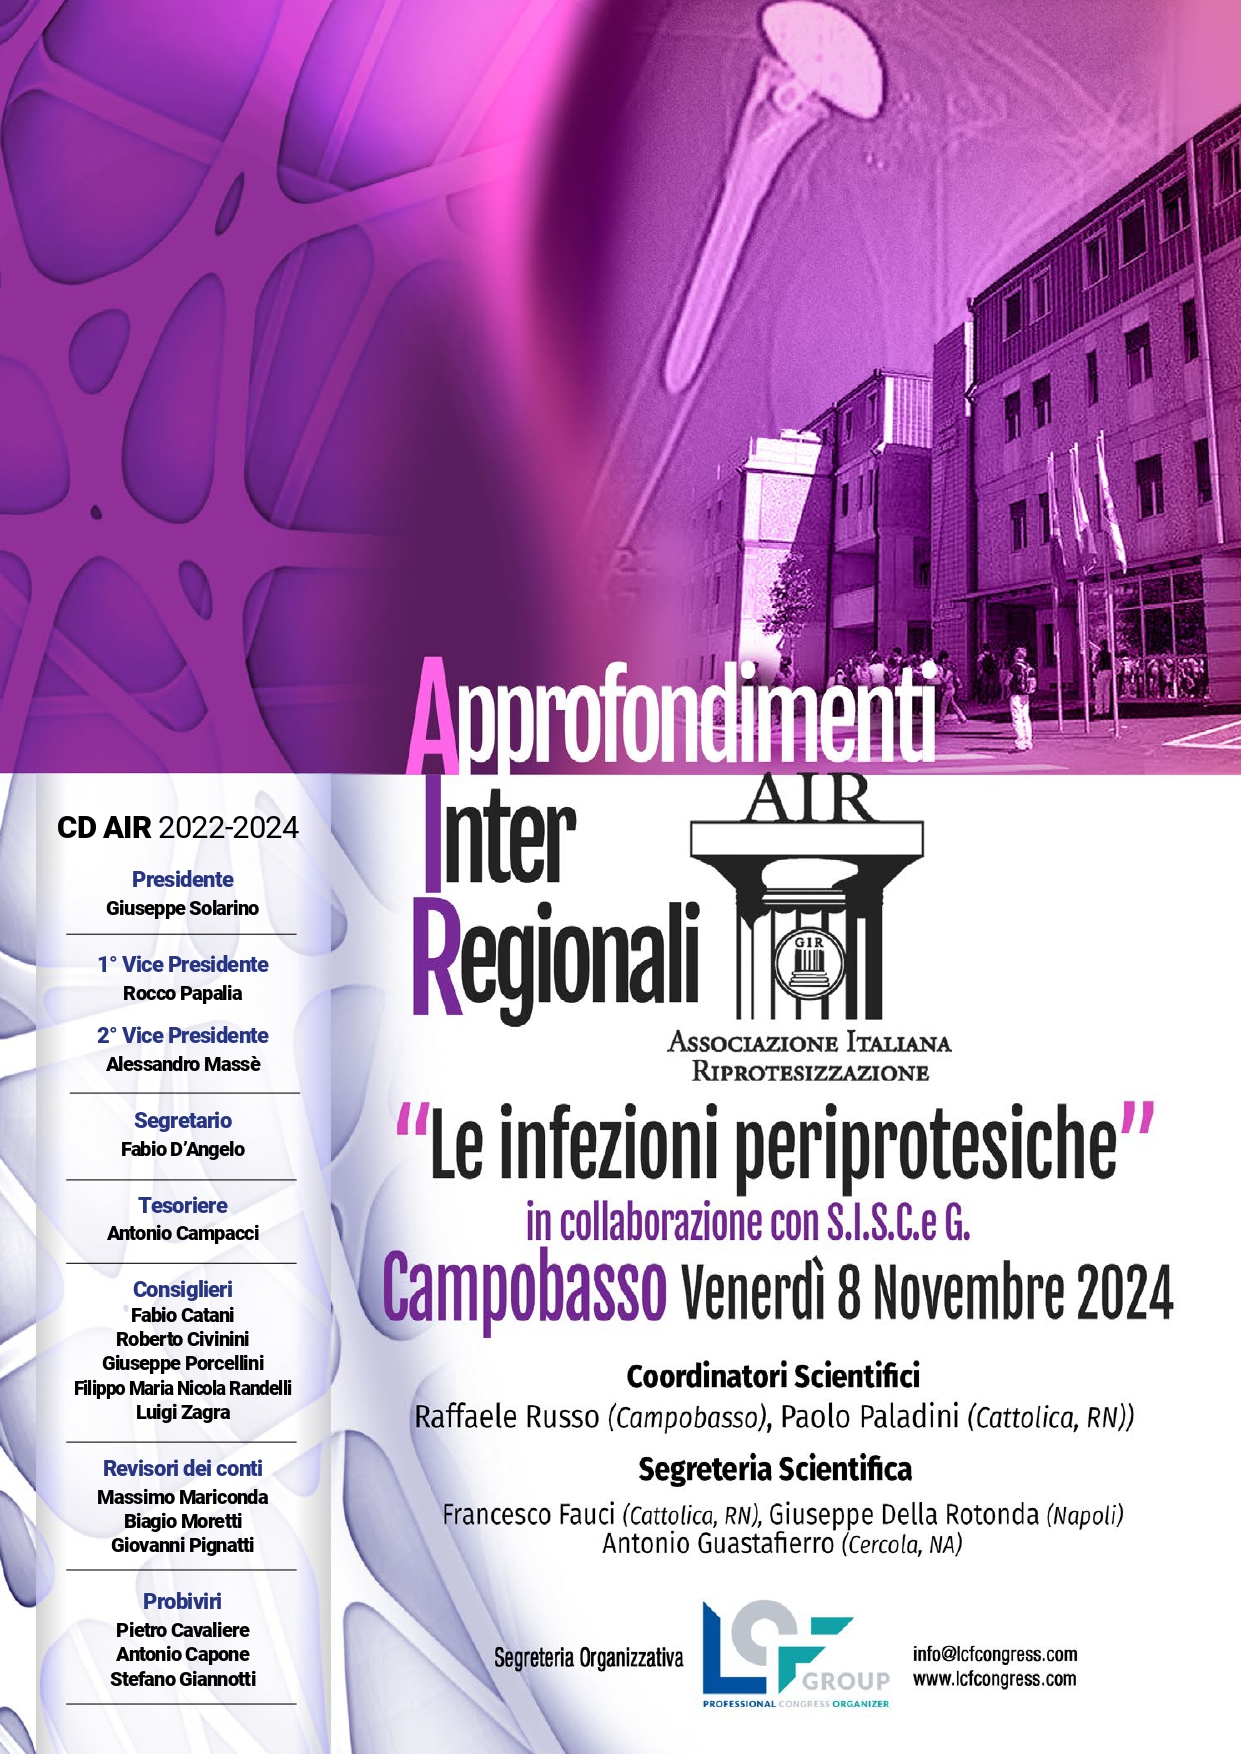 Approfondimenti Inter Regionali A.I.R. Campobasso
Le infezioni periprotesiche